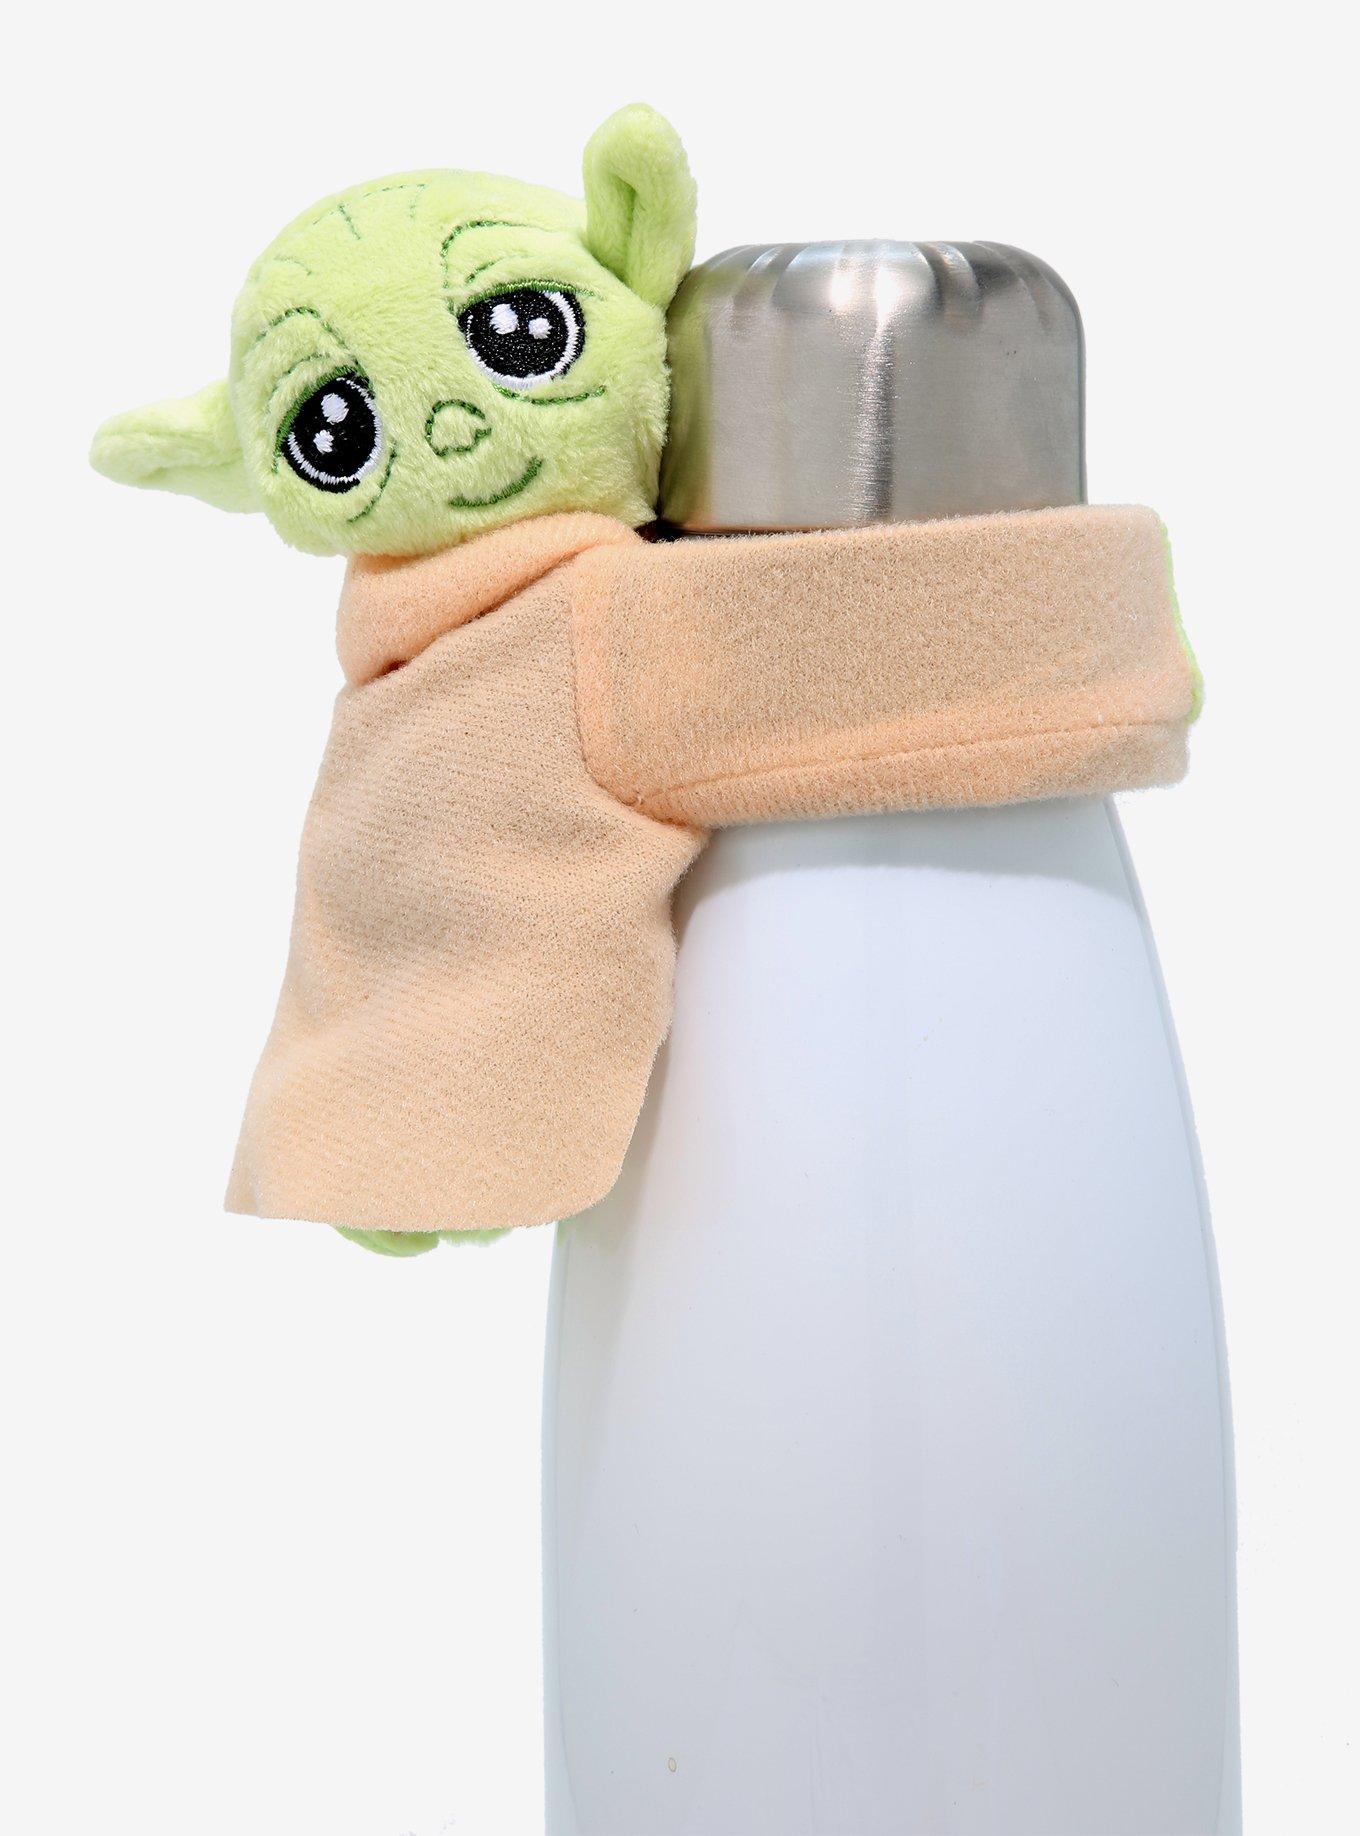 Star Wars, Kitchen, Star Wars Pride 2 Pack Kitchen Towels Nwt